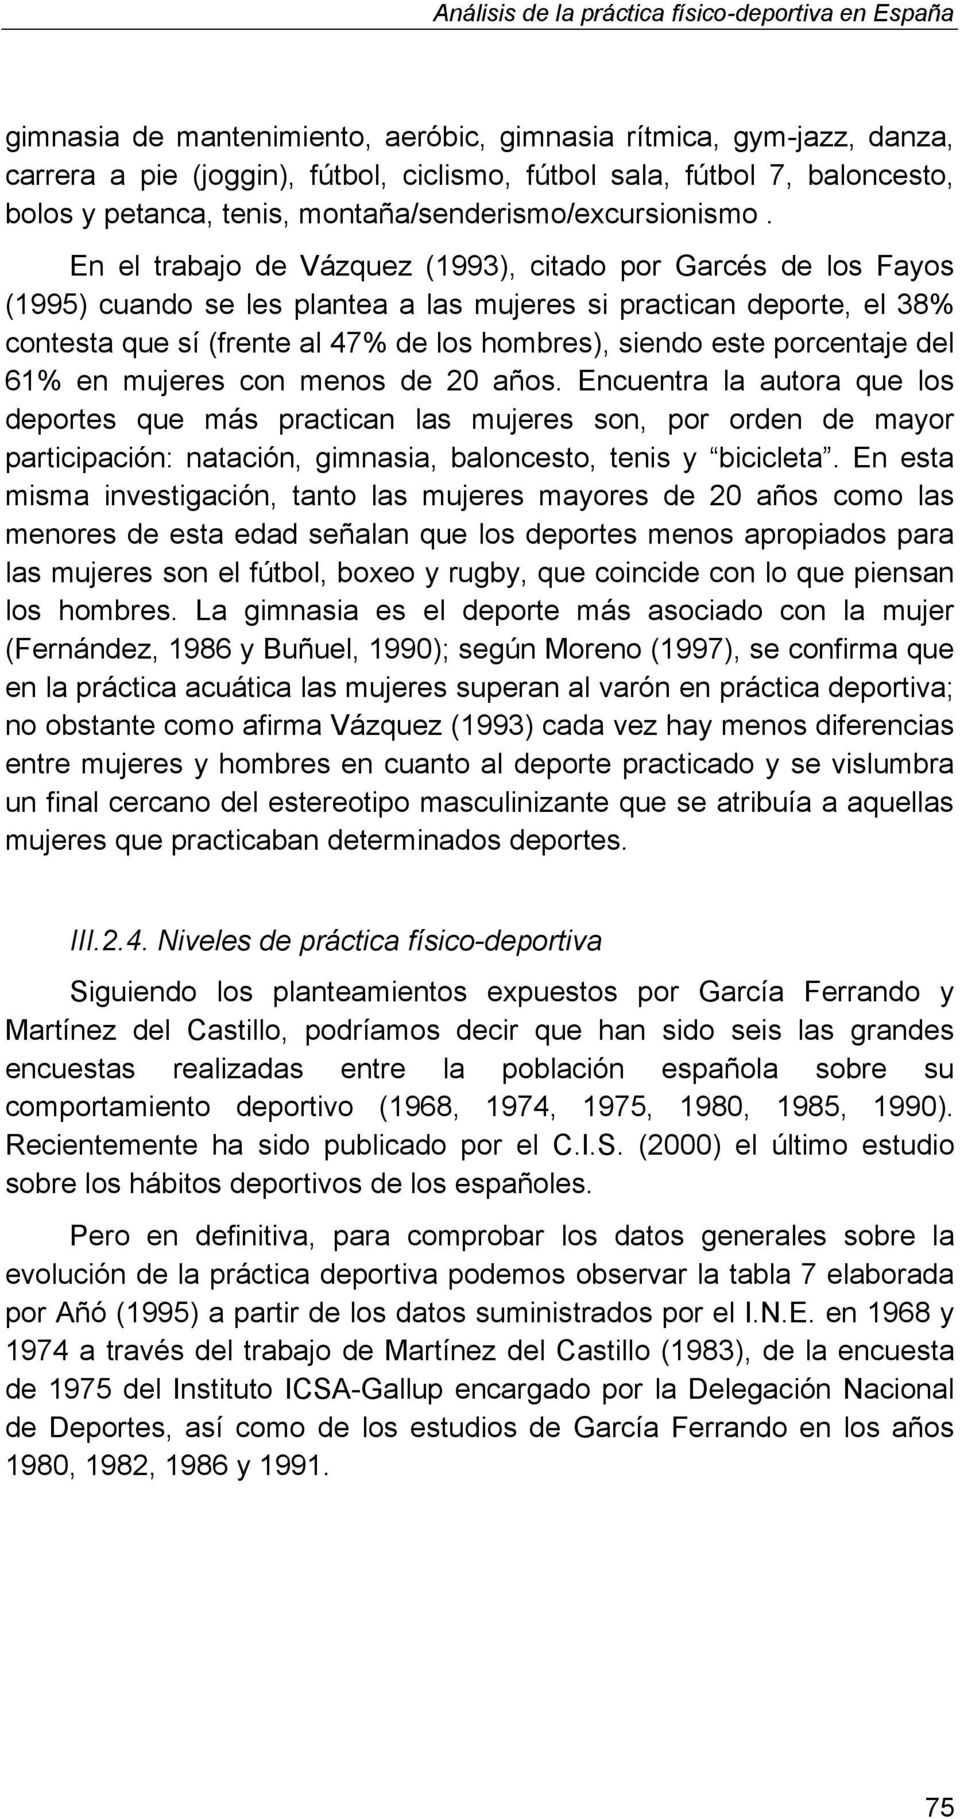 En el trabajo de Vázquez (1993), citado por Garcés de los Fayos (1995) cuando se les plantea a las mujeres si practican deporte, el 38% contesta que sí (frente al 47% de los hombres), siendo este